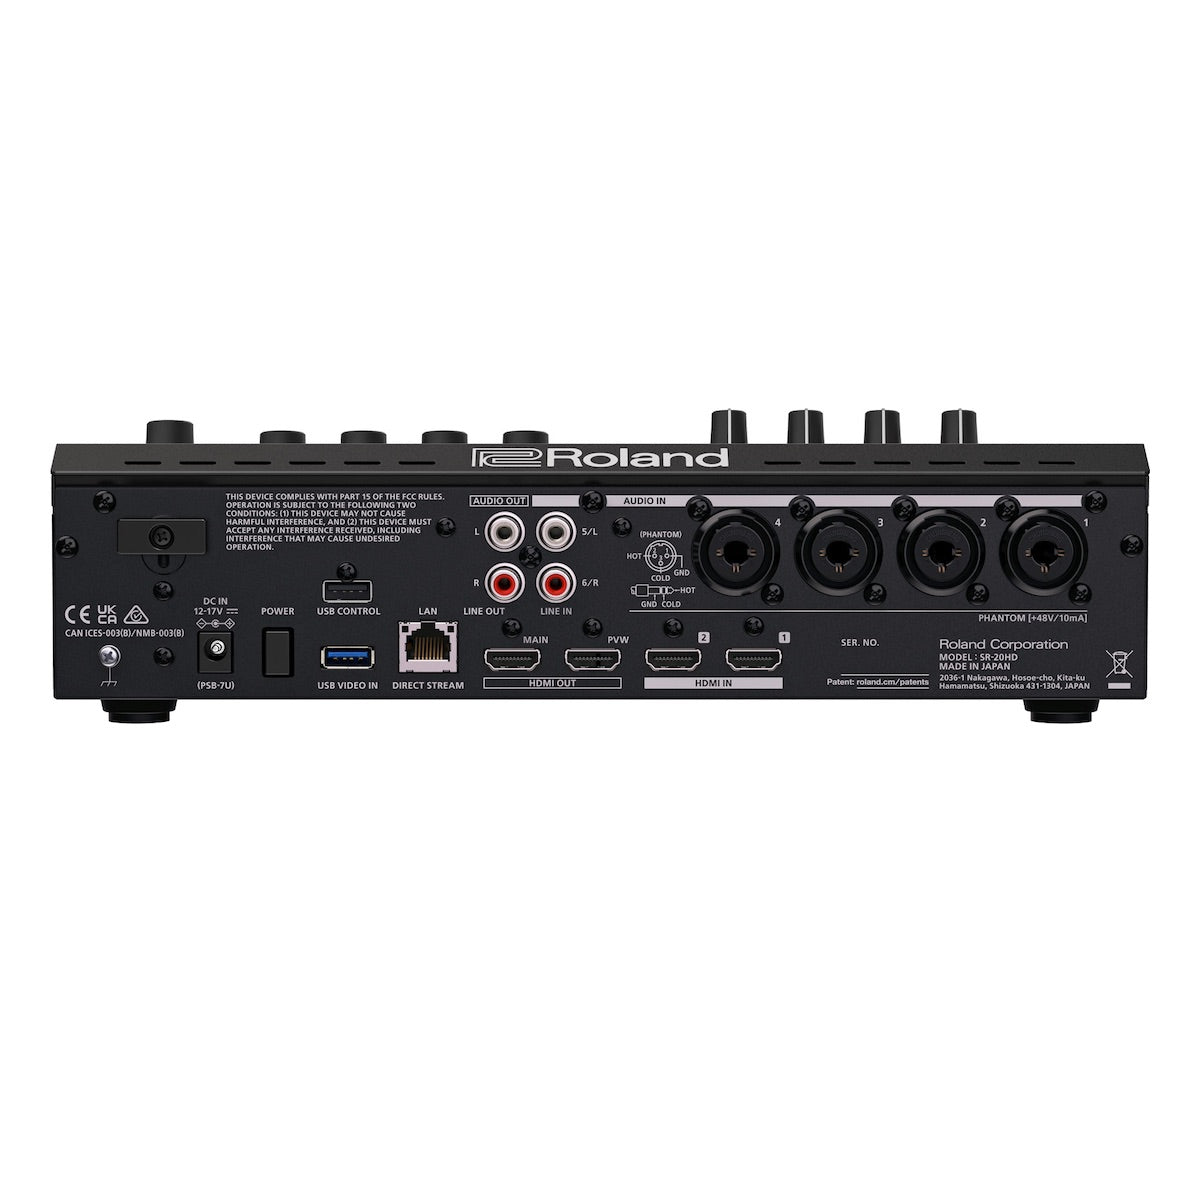 Roland SR-20HD - Direct Streaming AV Mixer, rear